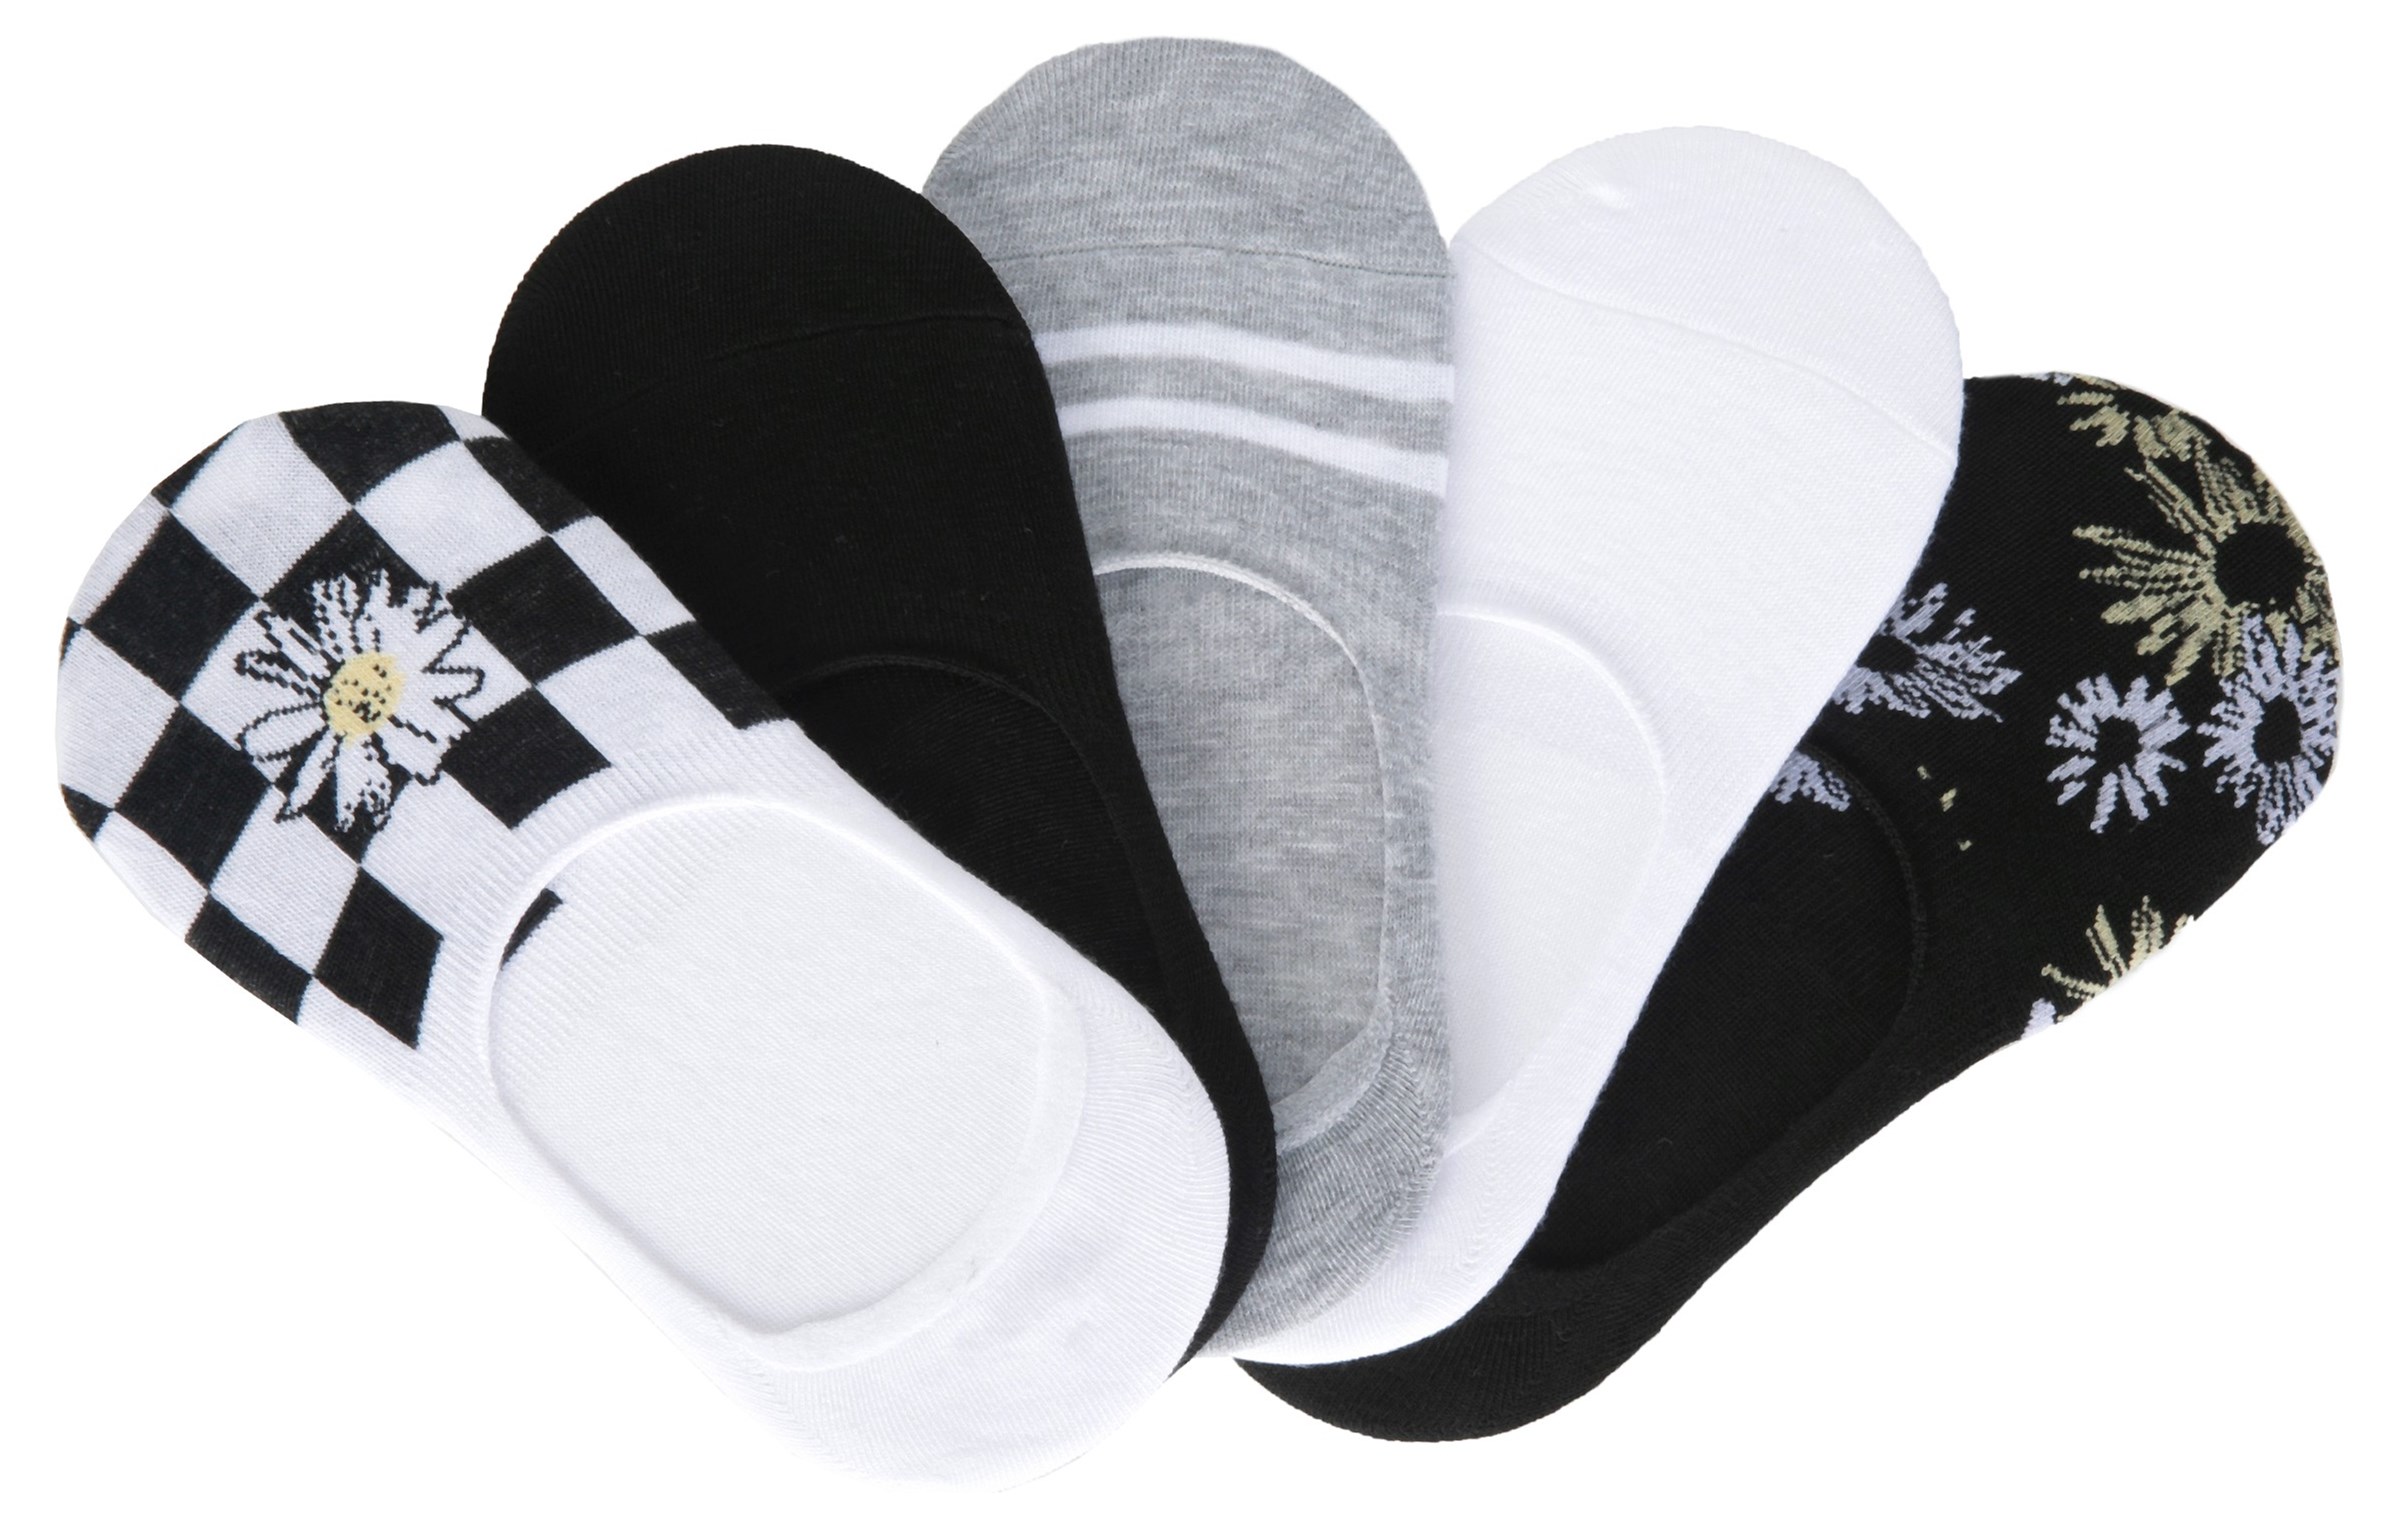 Steve Madden Women's 5 Pack Footie Liner Socks